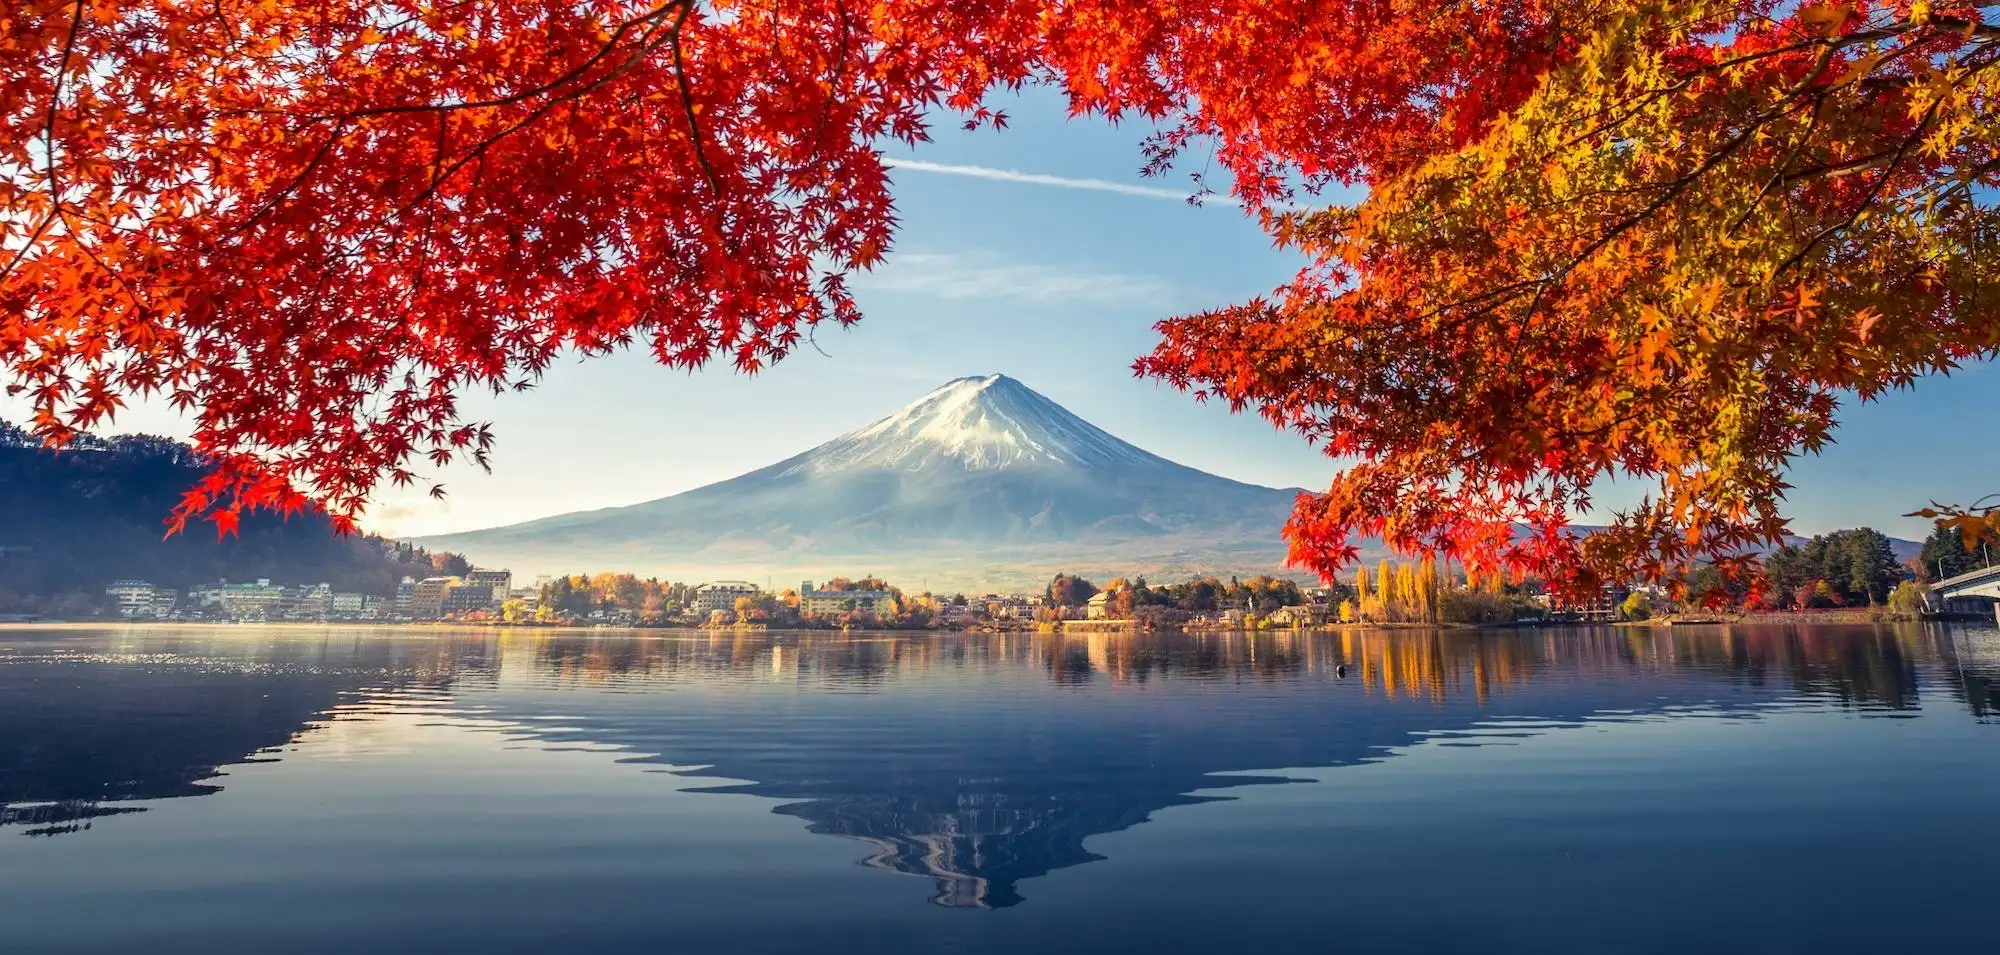 摄影比赛“秋季”的作品介绍──枫叶及作品10选。就让我们好好欣赏日本